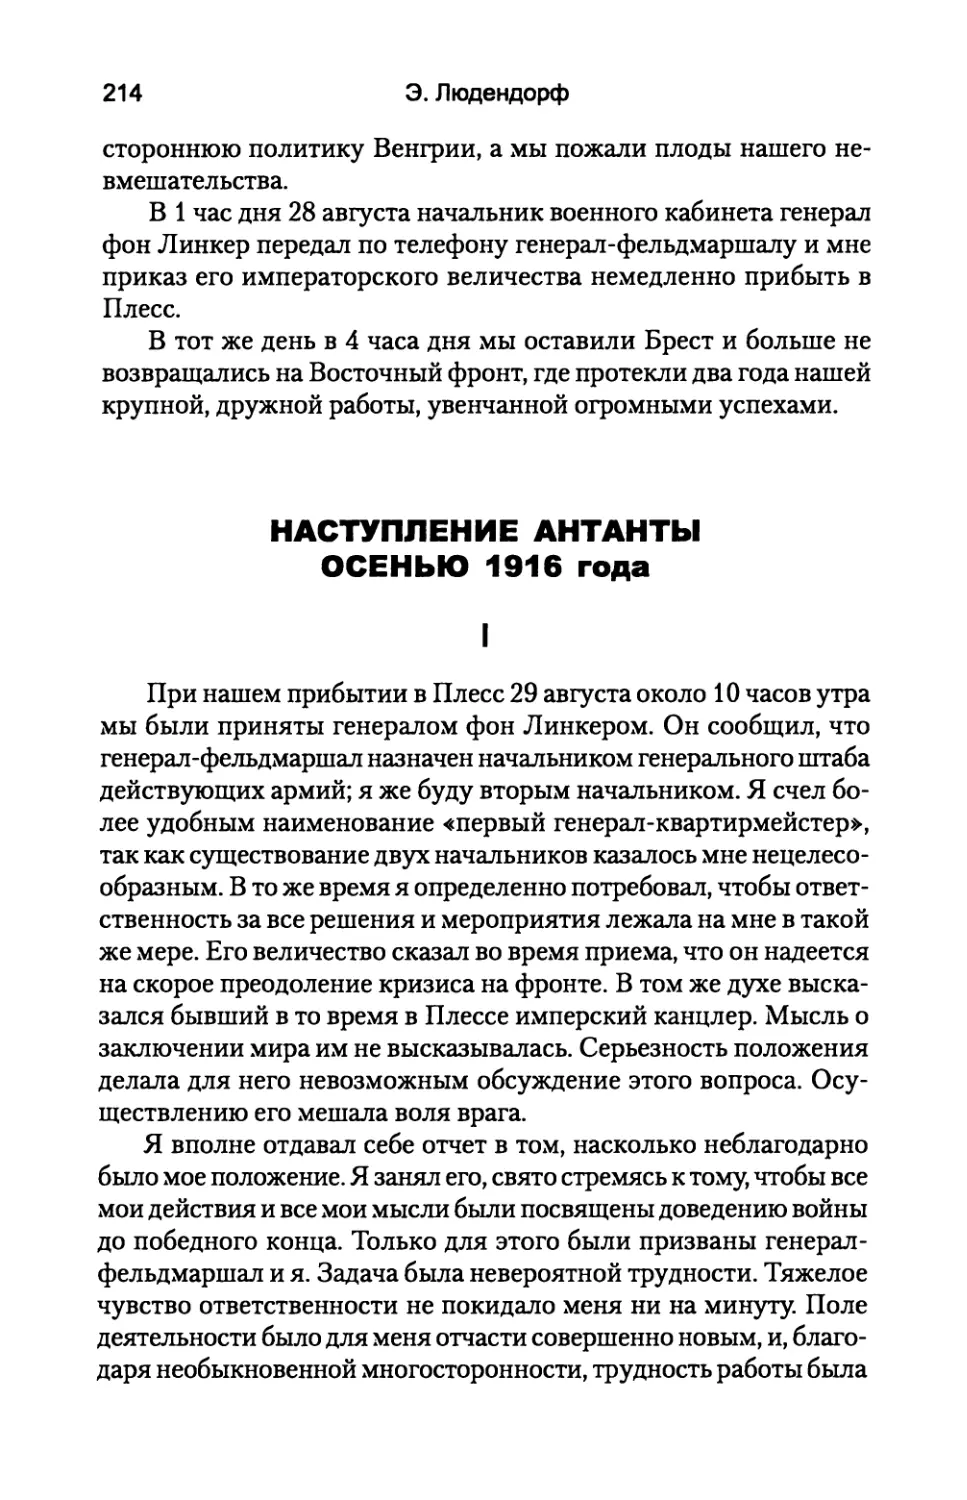 НАСТУПЛЕНИЕ  АНТАНТЫ  ОСЕНЬЮ  1916  года